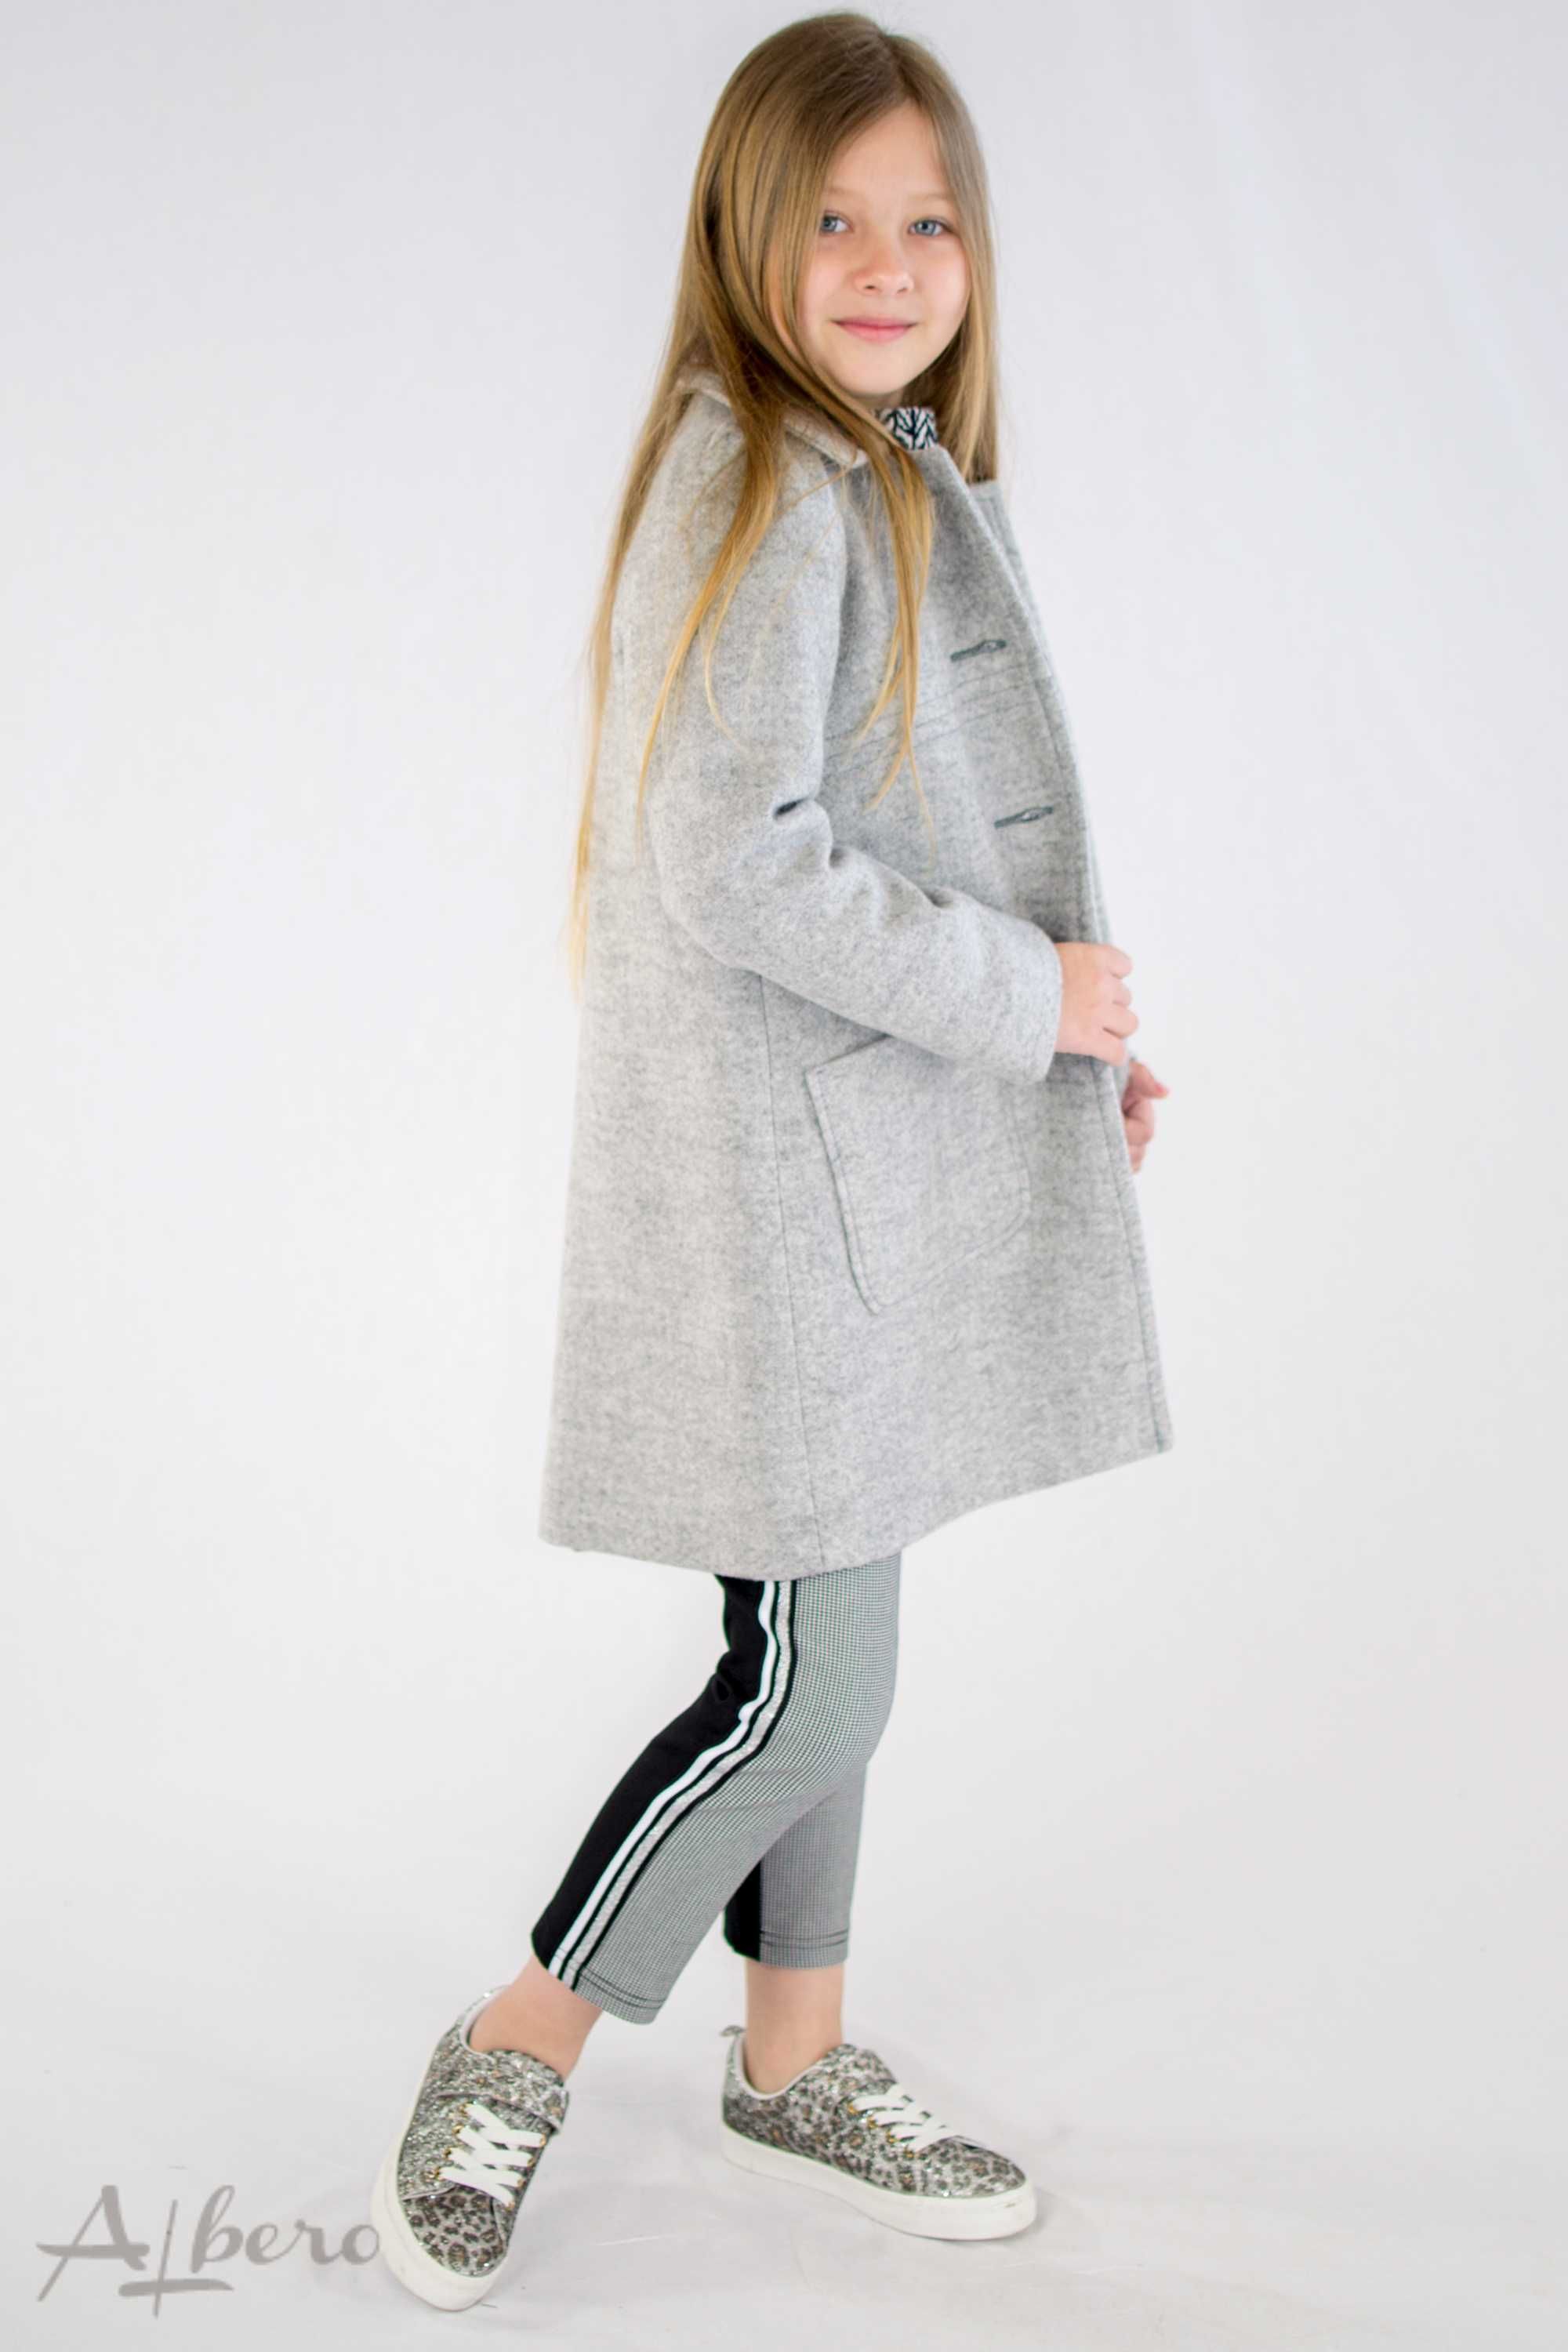 Пальто шерстяное серое (черное) с накладными карманами  128-152рр